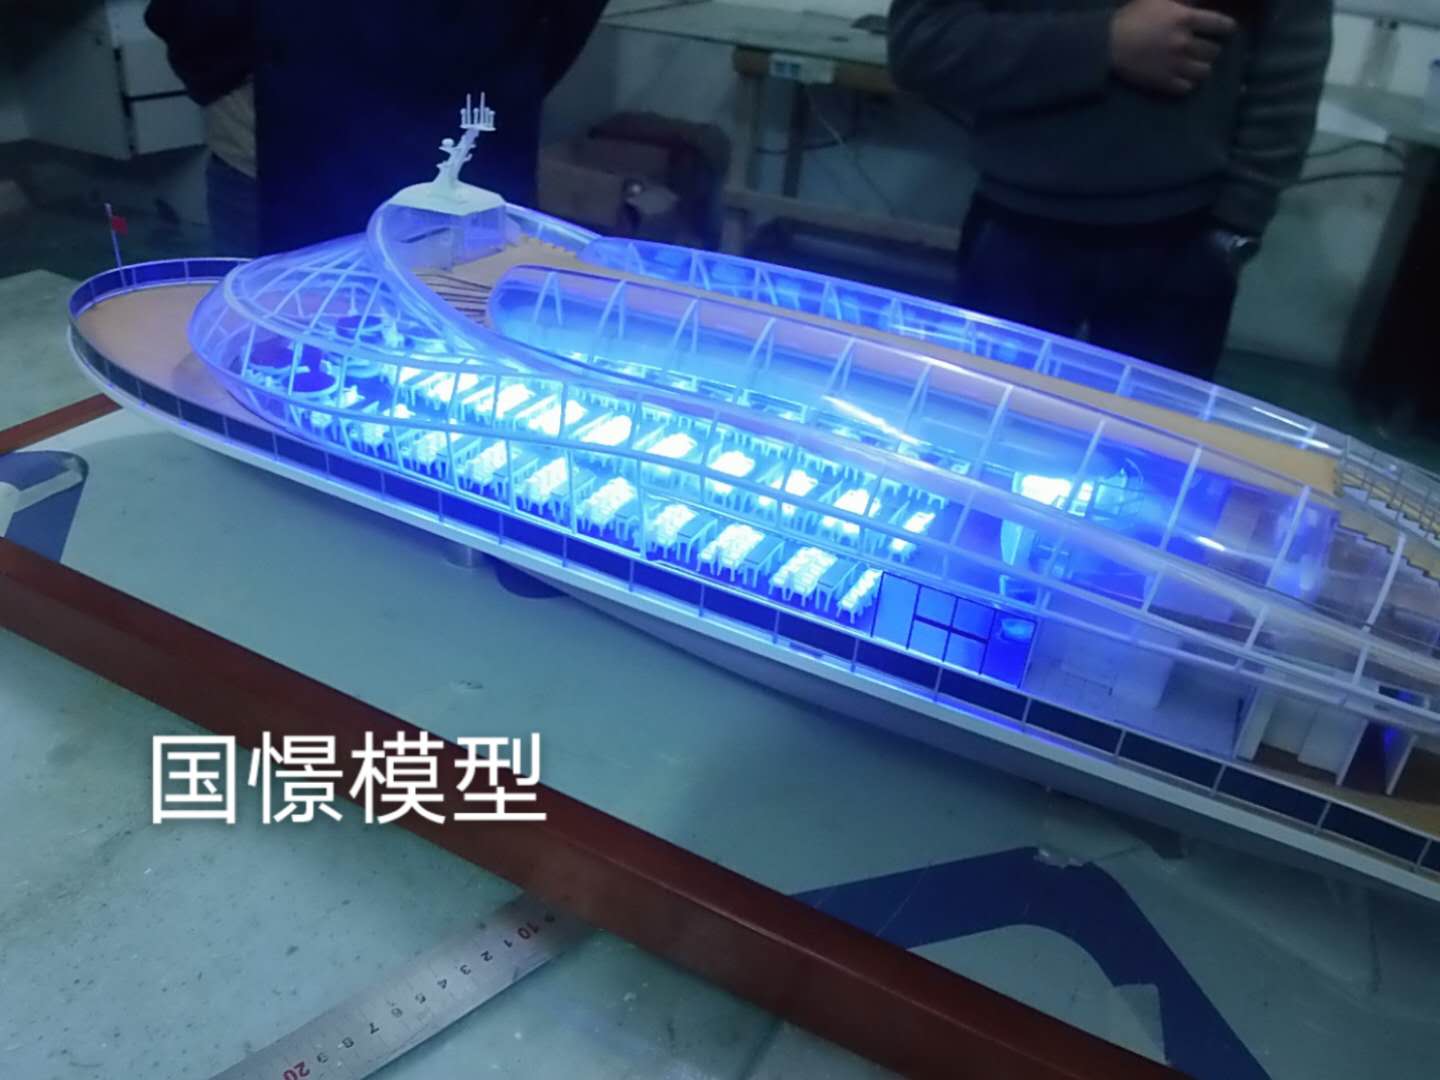 绥滨县船舶模型